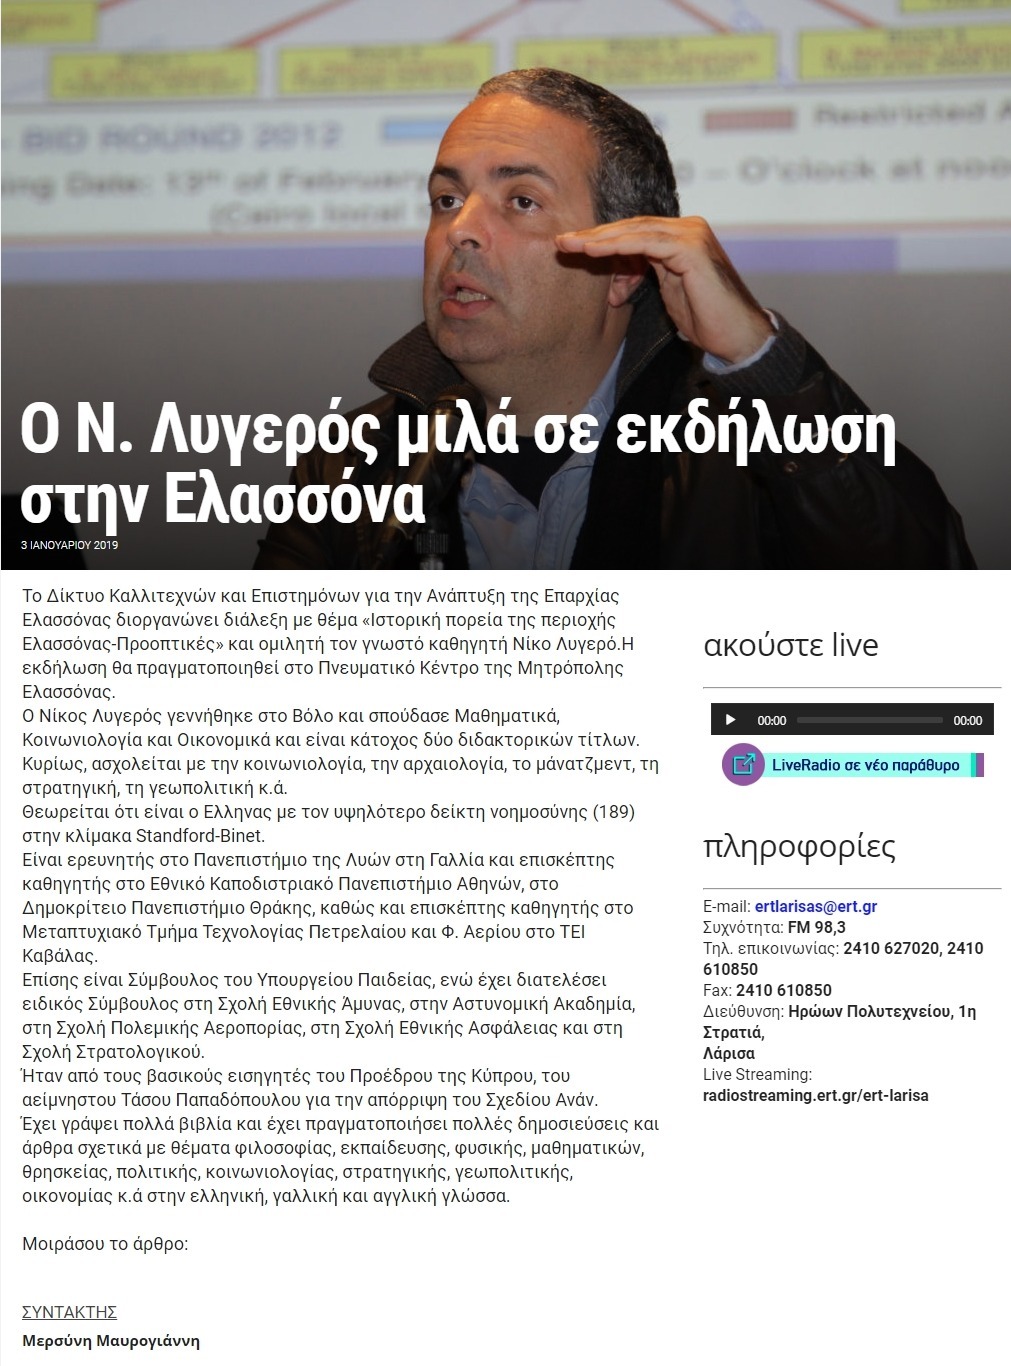 Ο Ν. Λυγερός μιλά σε εκδήλωση στην Ελασσόνα, ΕΡΤ, 03/01/2019 - Publication